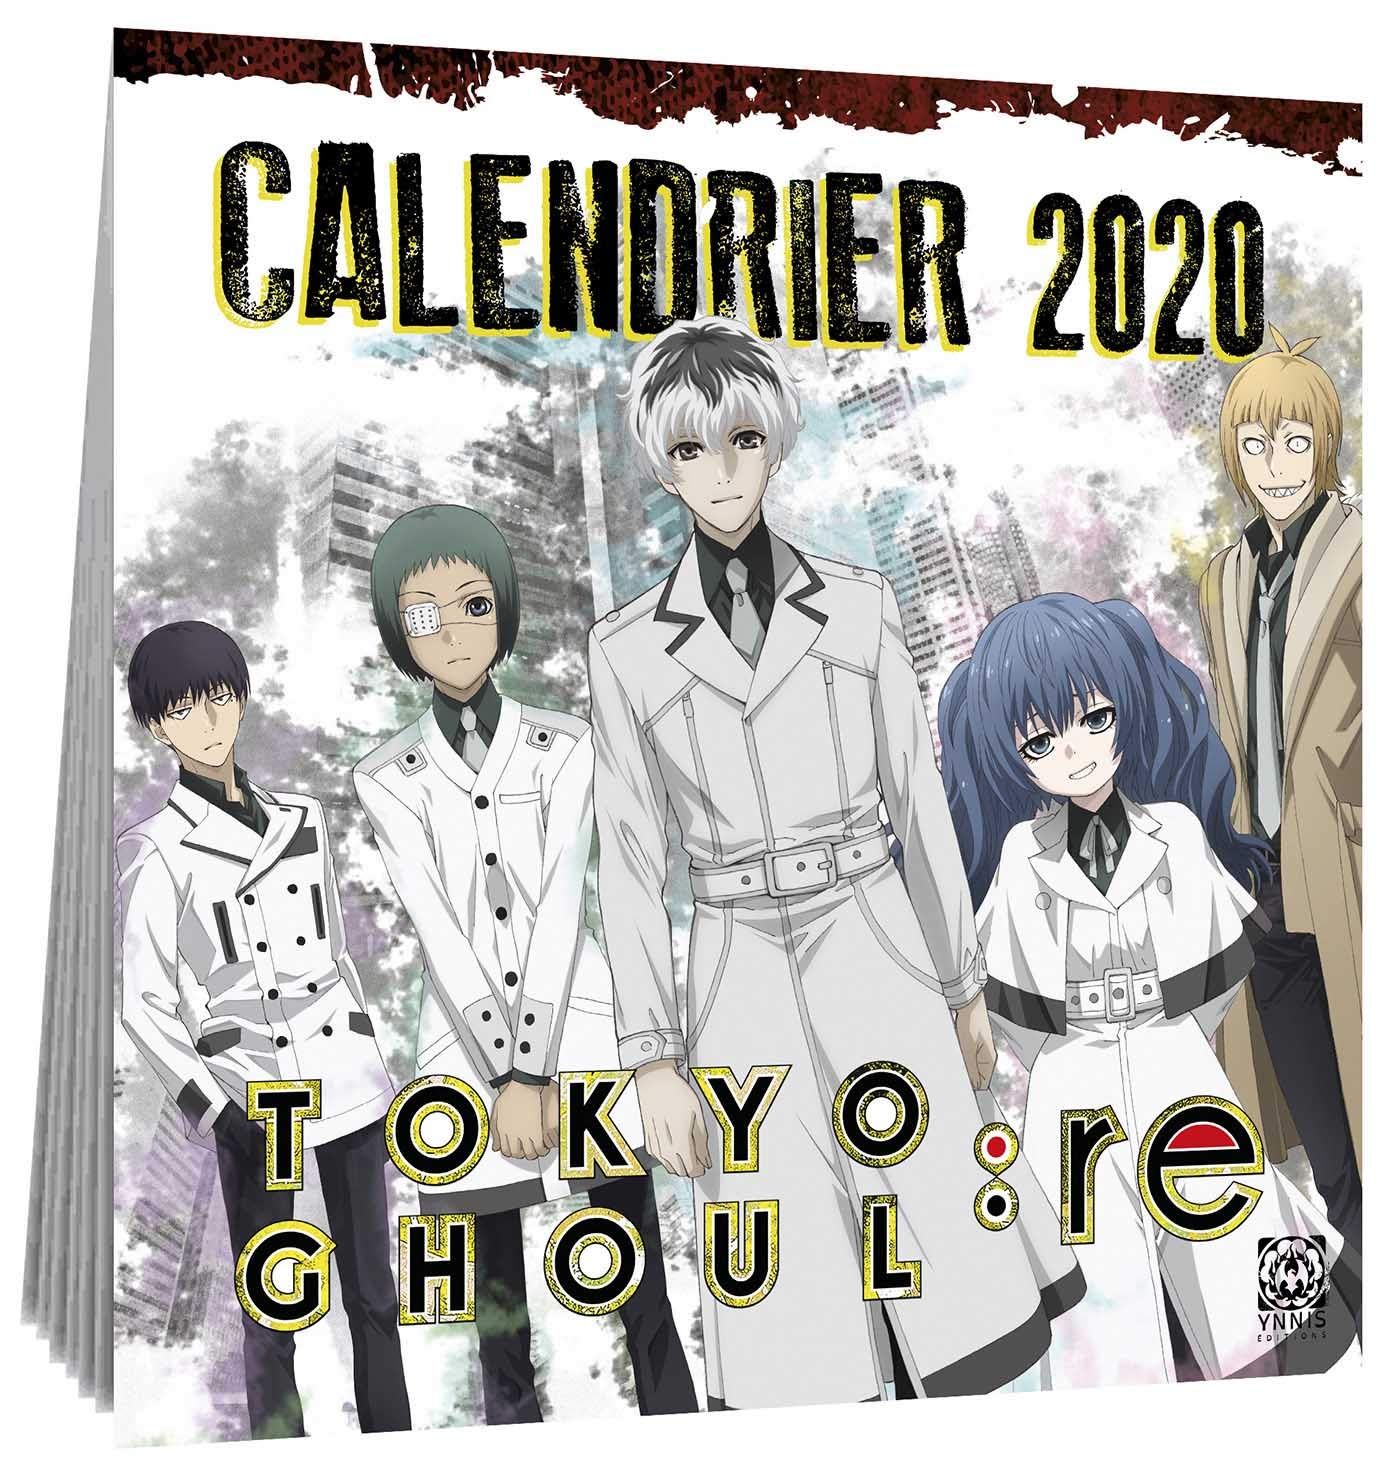 goodie - Tokyo Ghoul:re - Calendrier 2020 - Ynnis